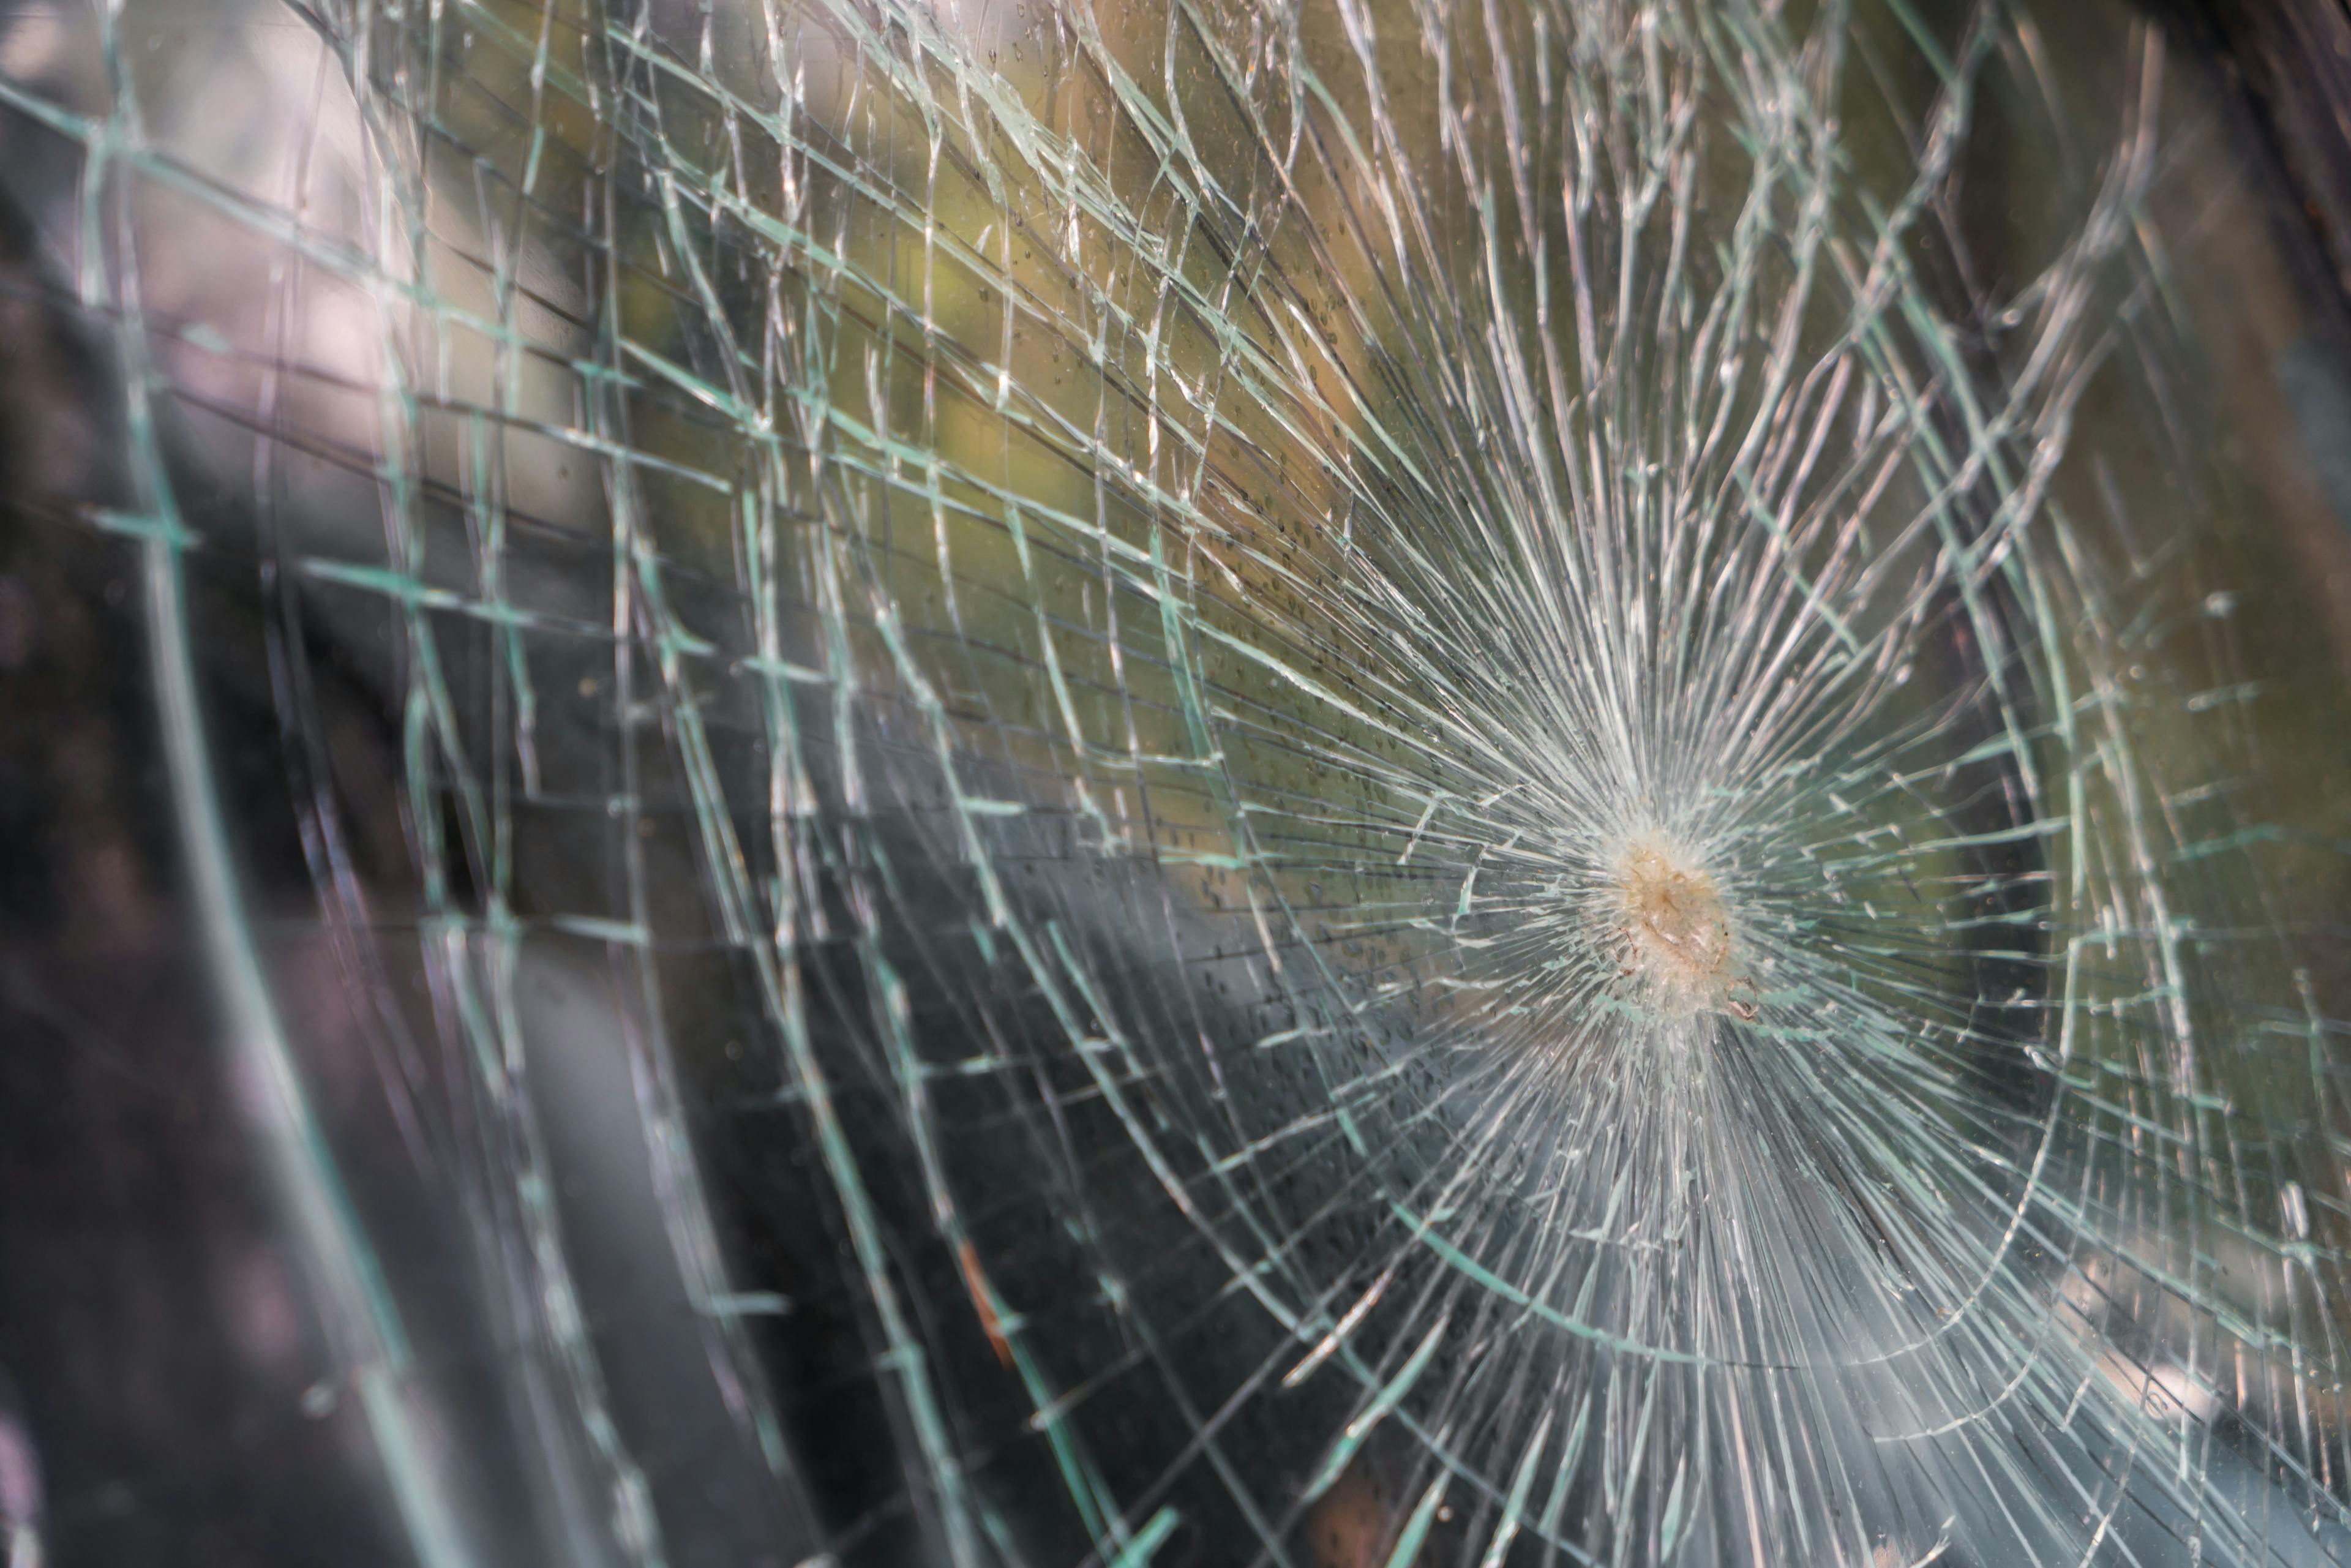 glass-broken-cracks-splinters-front-car-filtered-image